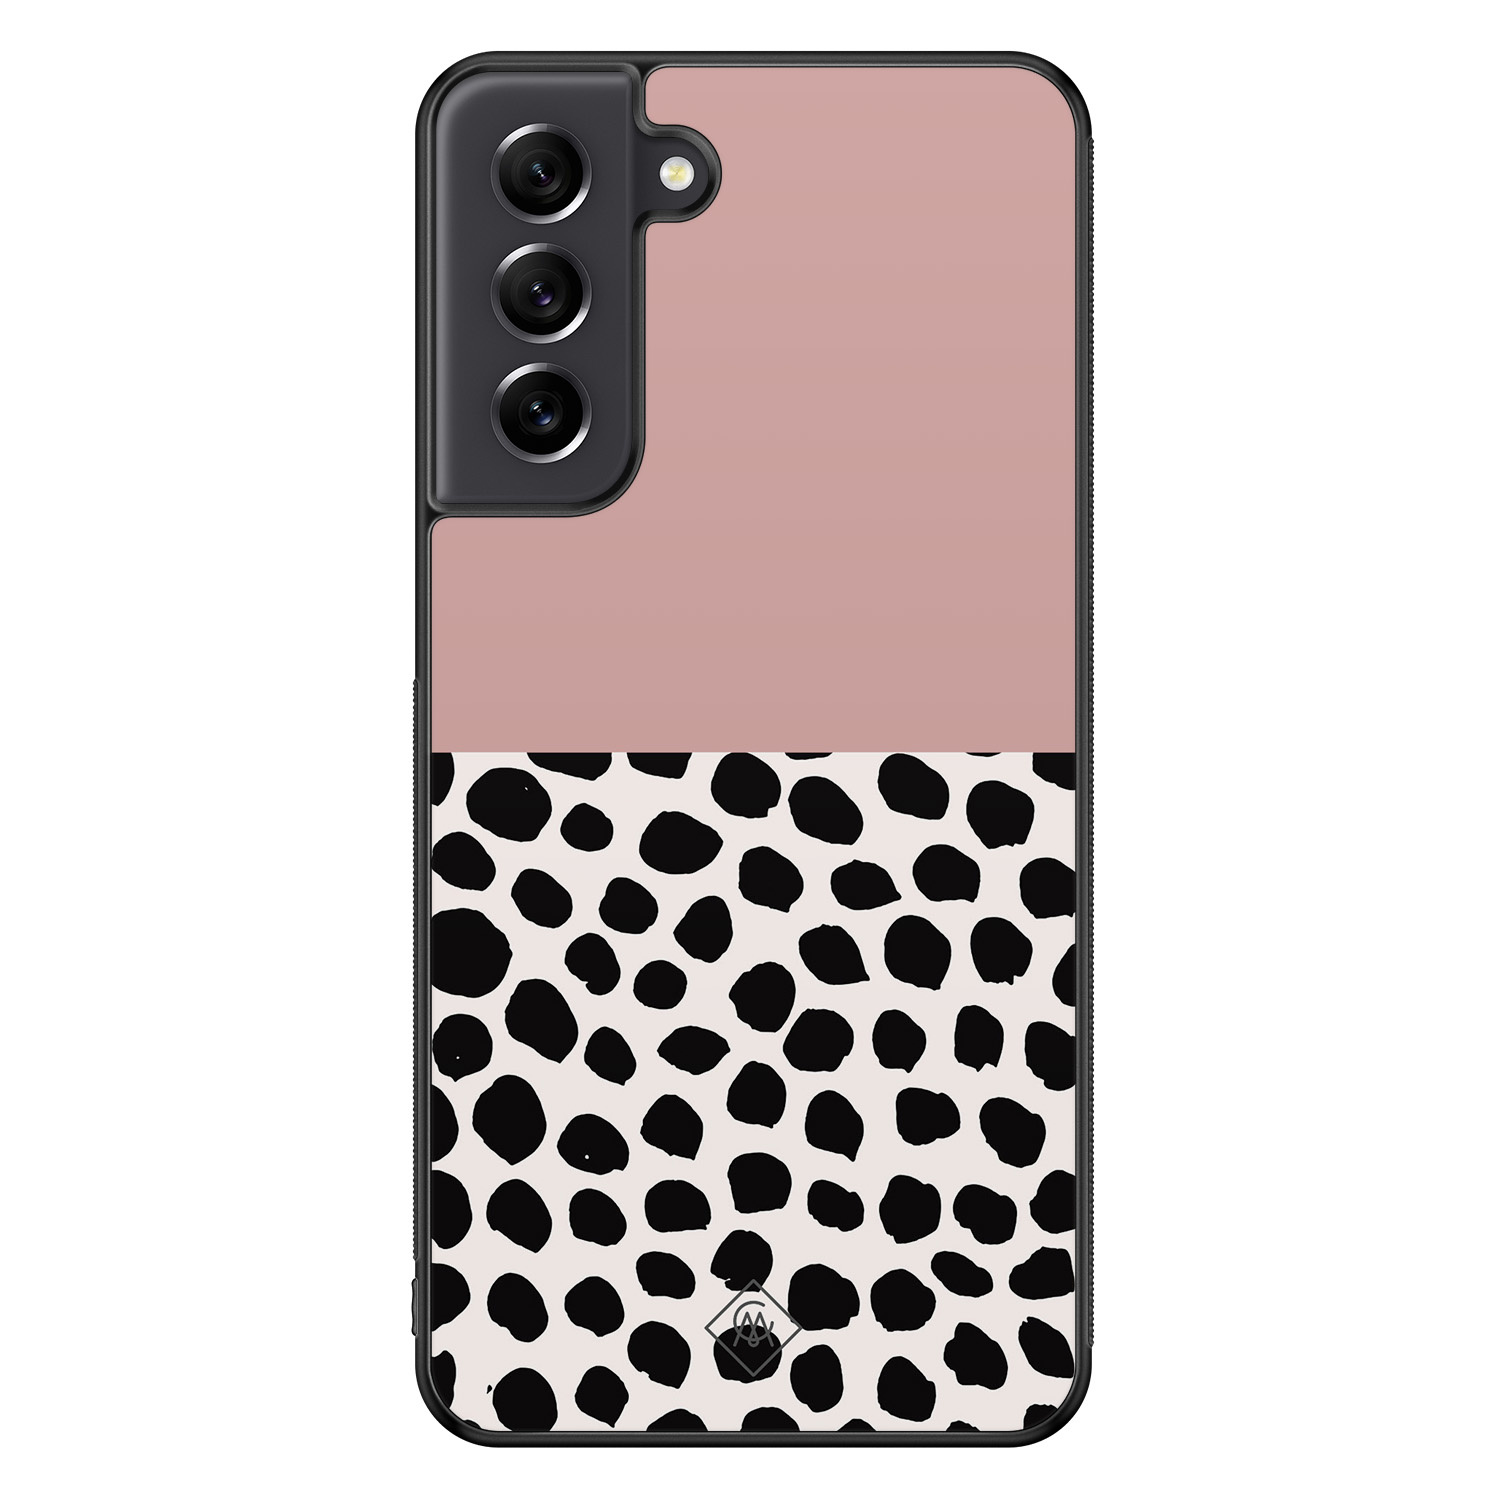 Samsung Galaxy S21 FE hoesje - Pink dots